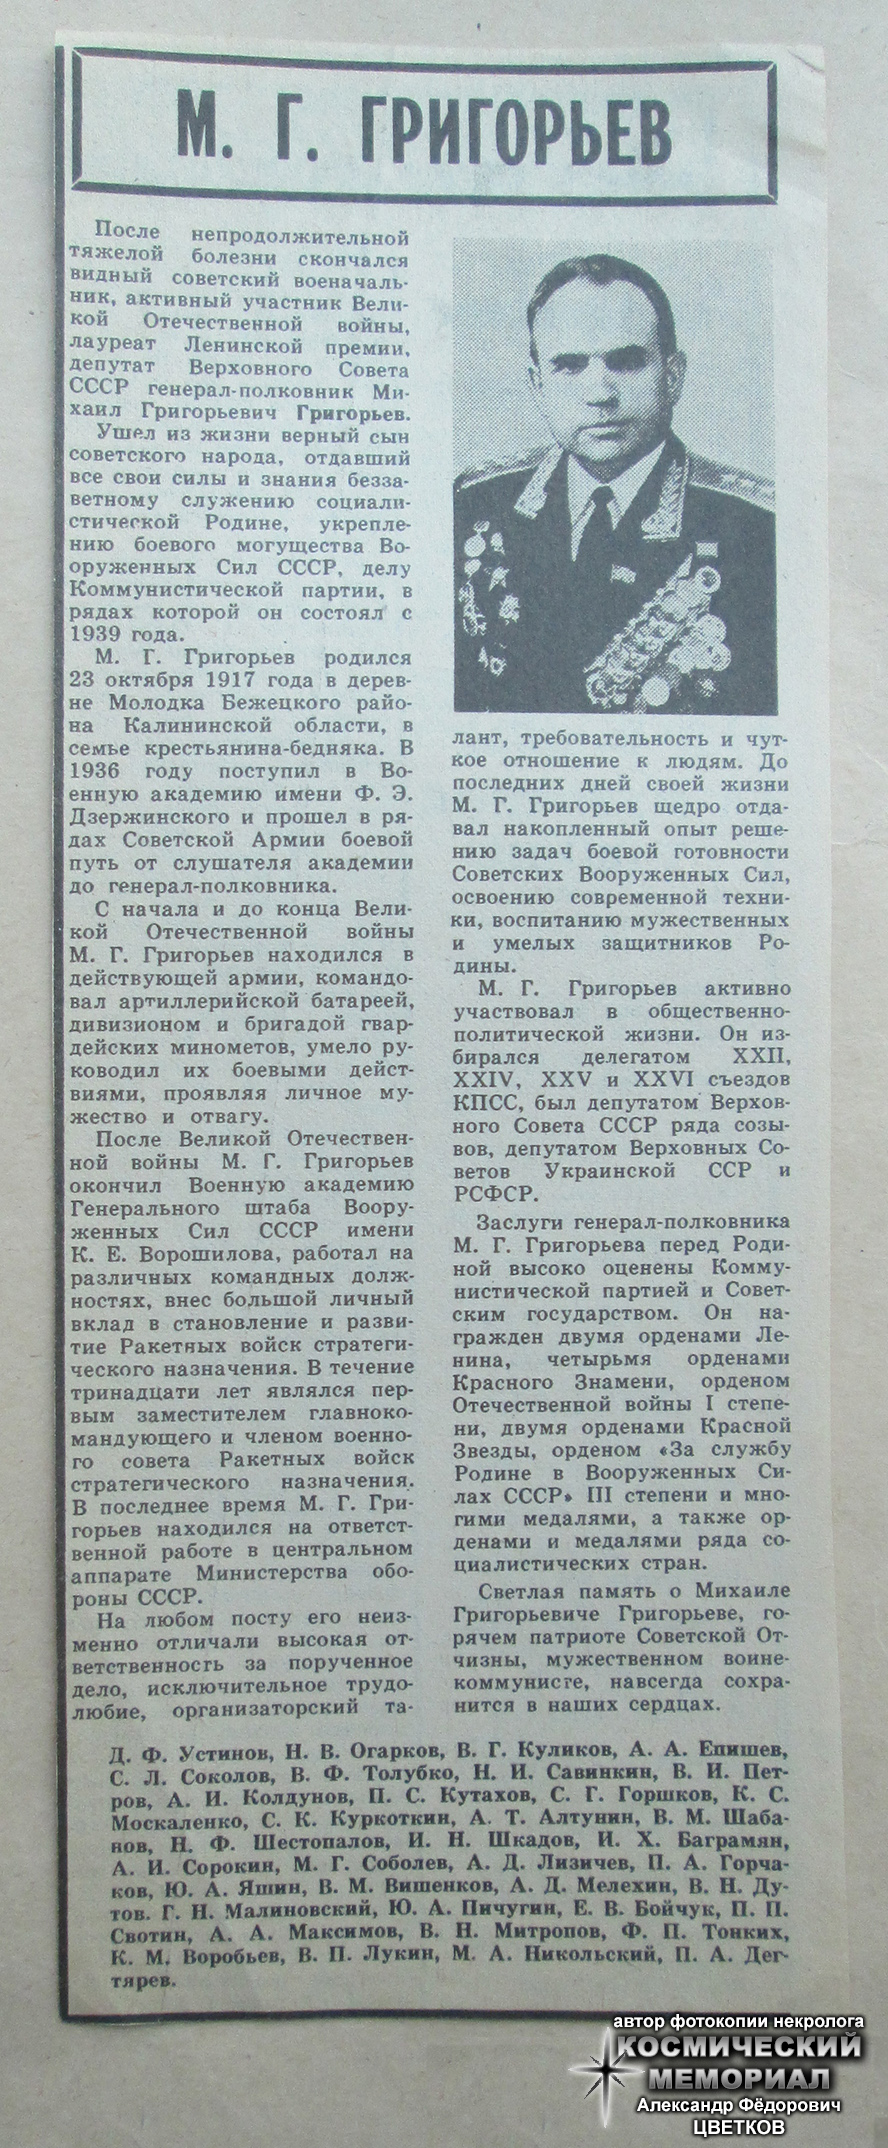 Некролог о смерти М.Г. Григорьева (газета "Красная звезда"; 14 ноября 1981 года; автор фотокопии - Цветков Александр Фёдорович)